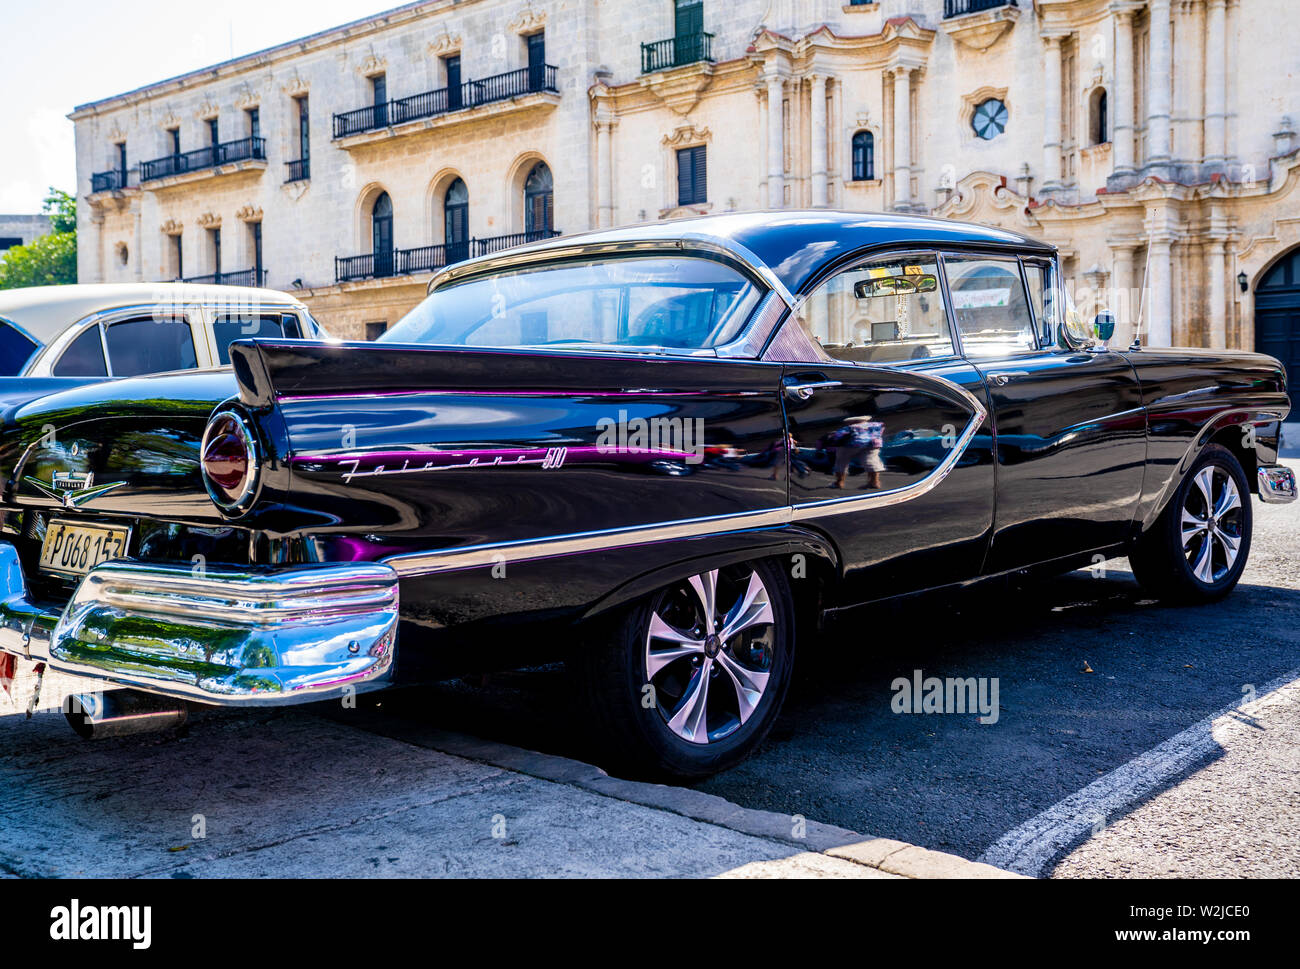 Vecchia Havana, Cuba - Gennaio 2, 2019: un bellissimo American auto parcheggiate nelle strade di l'Avana, Cuba. Foto Stock